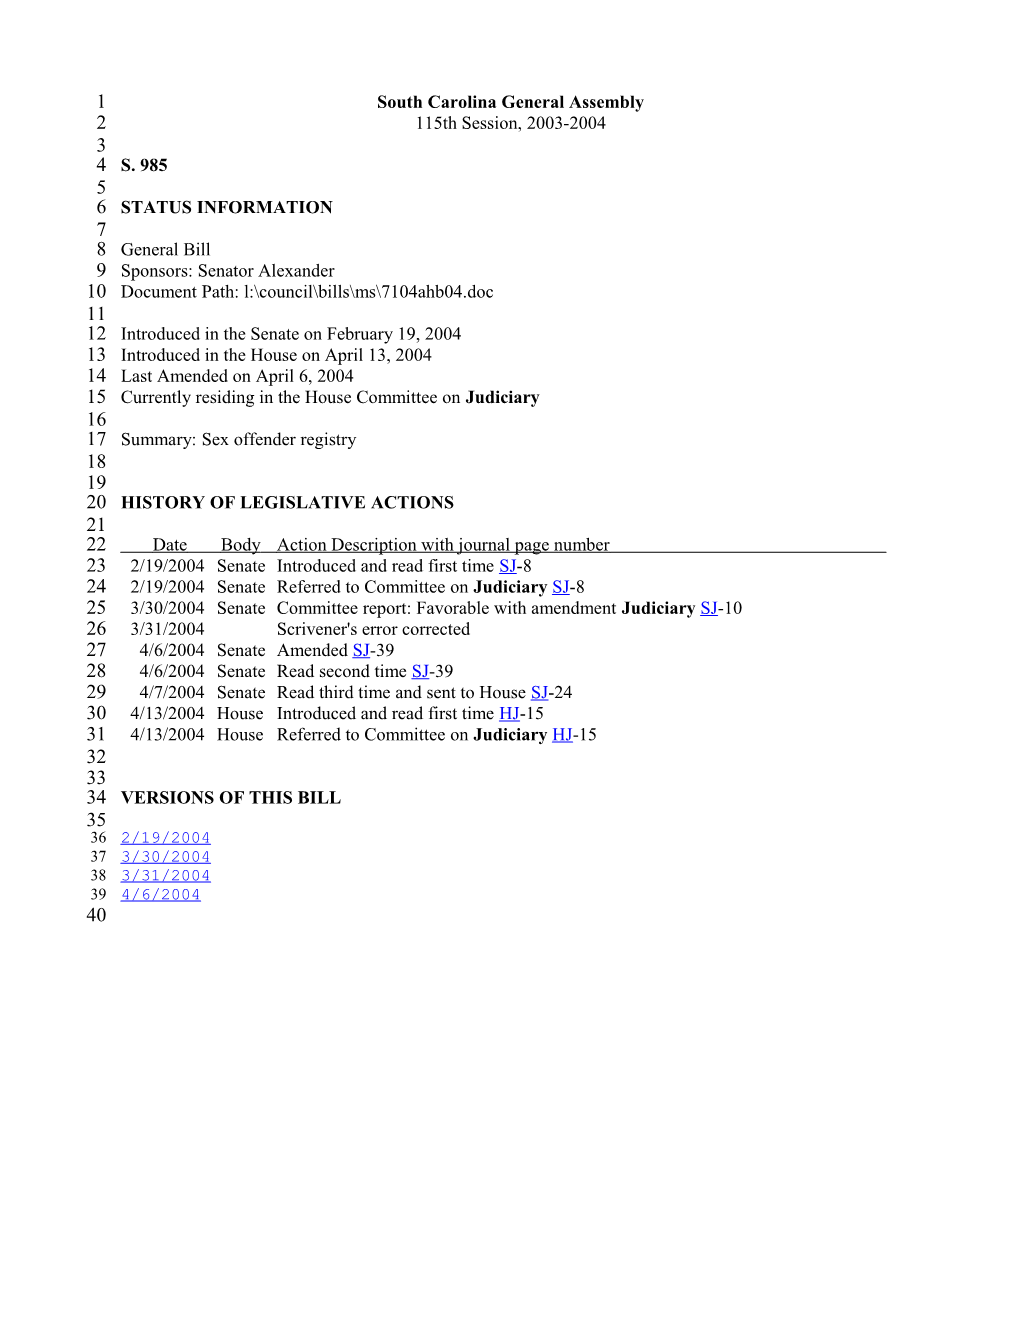 2003-2004 Bill 985: Sex Offender Registry - South Carolina Legislature Online